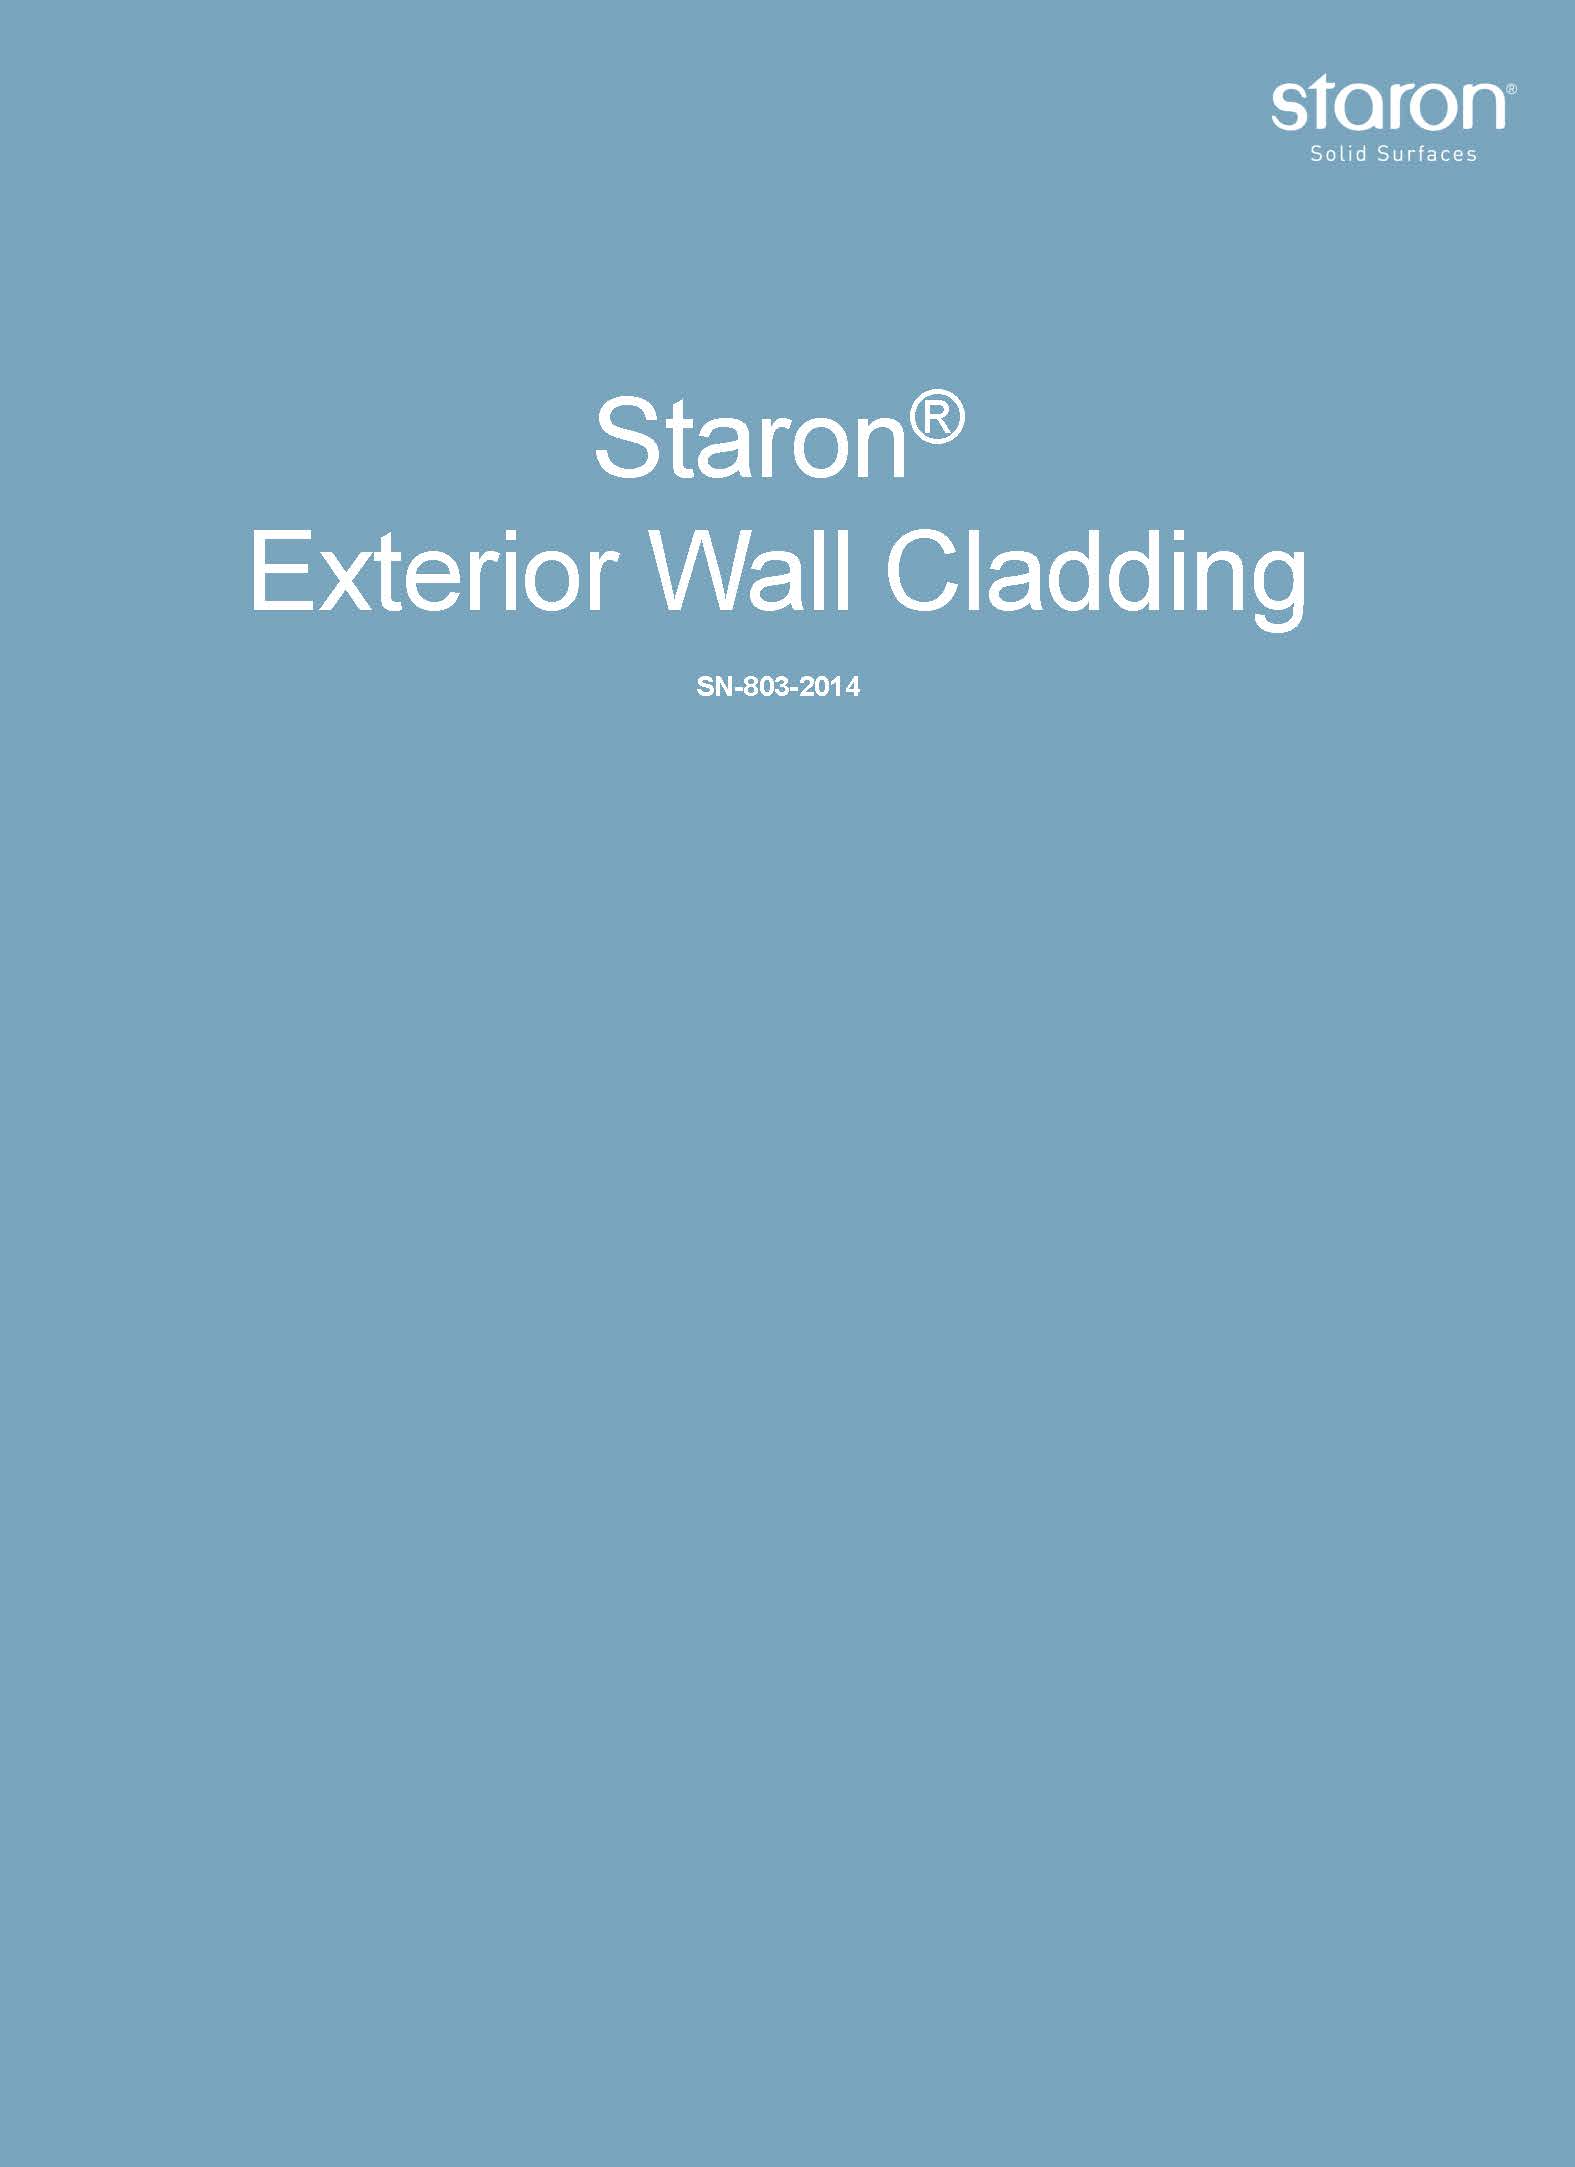 Staron Exterior Wall Cladding